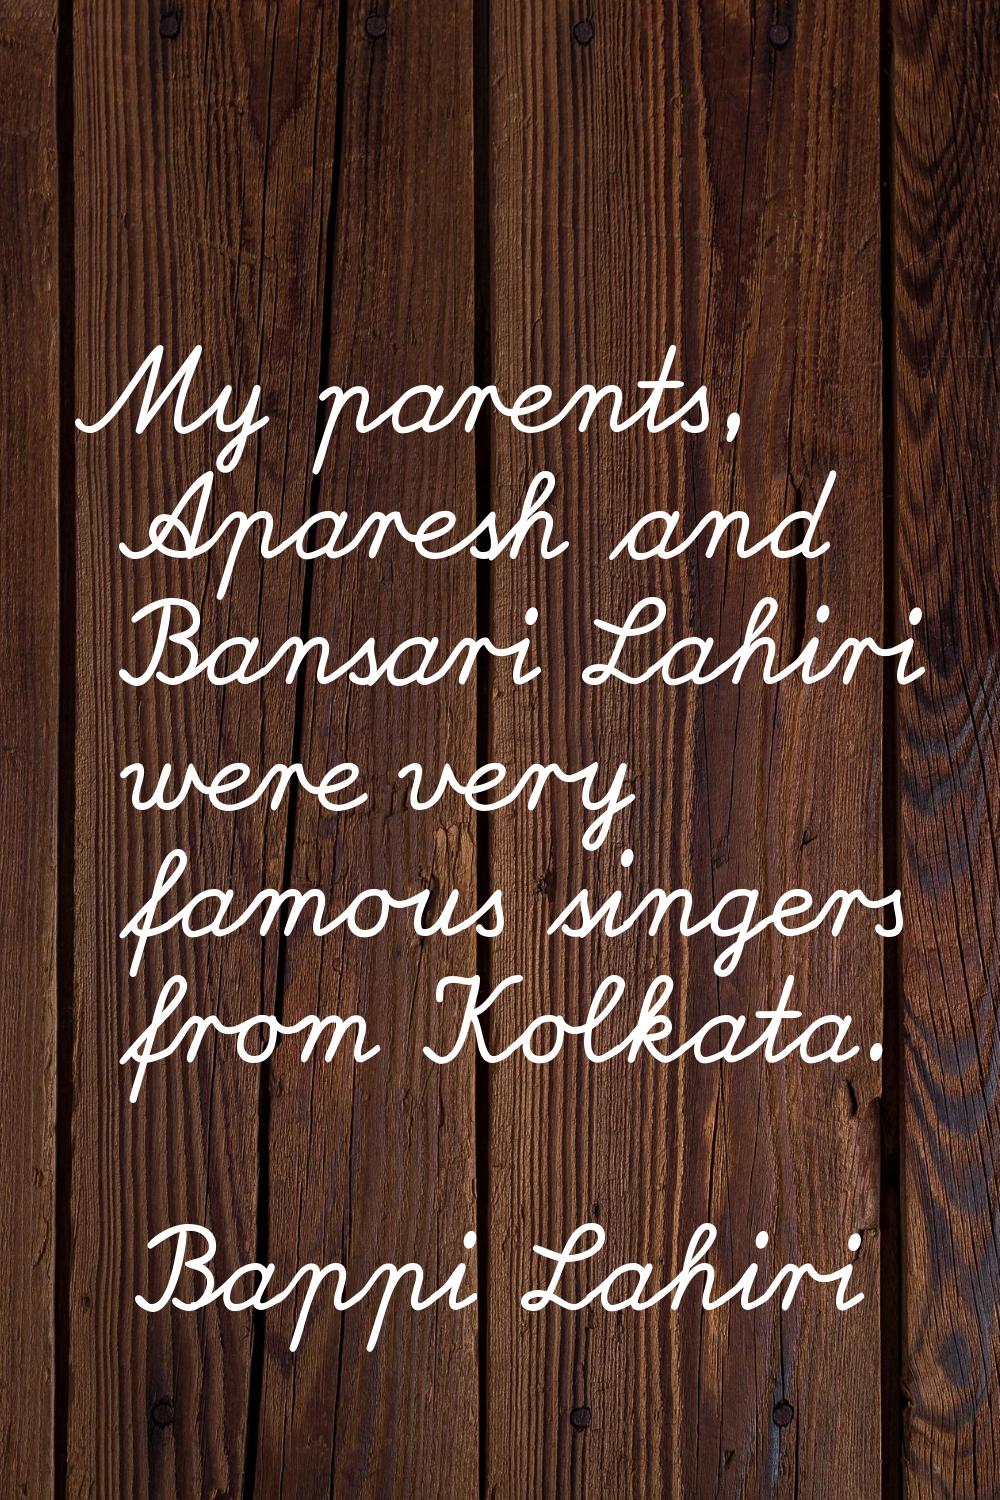 My parents, Aparesh and Bansari Lahiri were very famous singers from Kolkata.